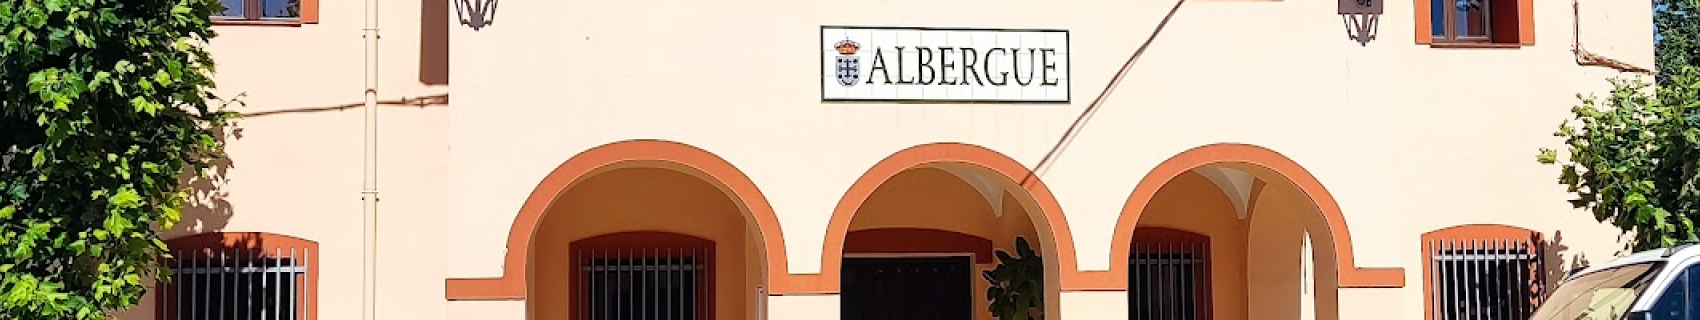 Albergue